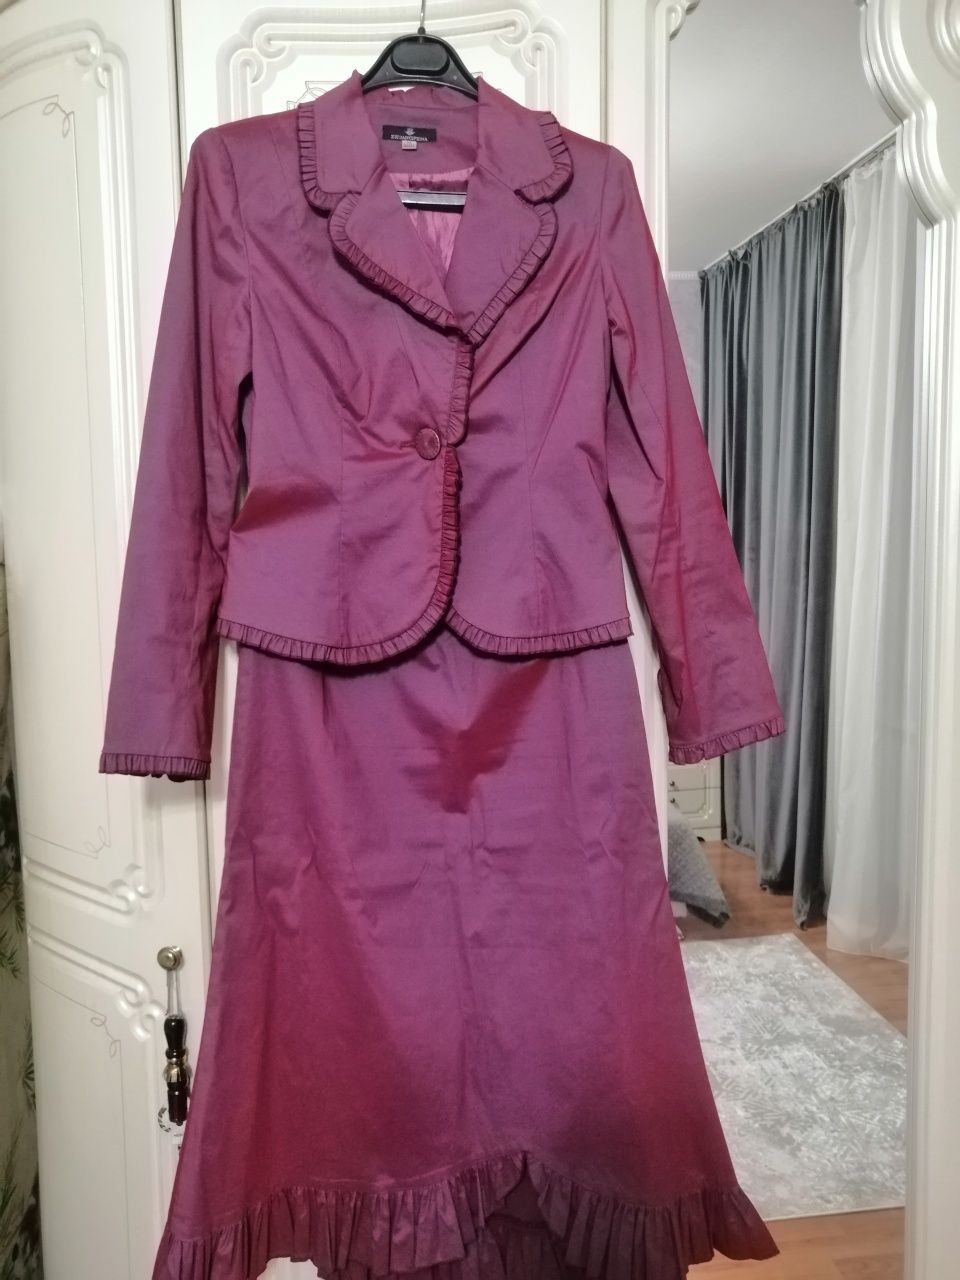 Разгрузка женского гардероба:Платье, юбки, рубашка, болеро с мехом